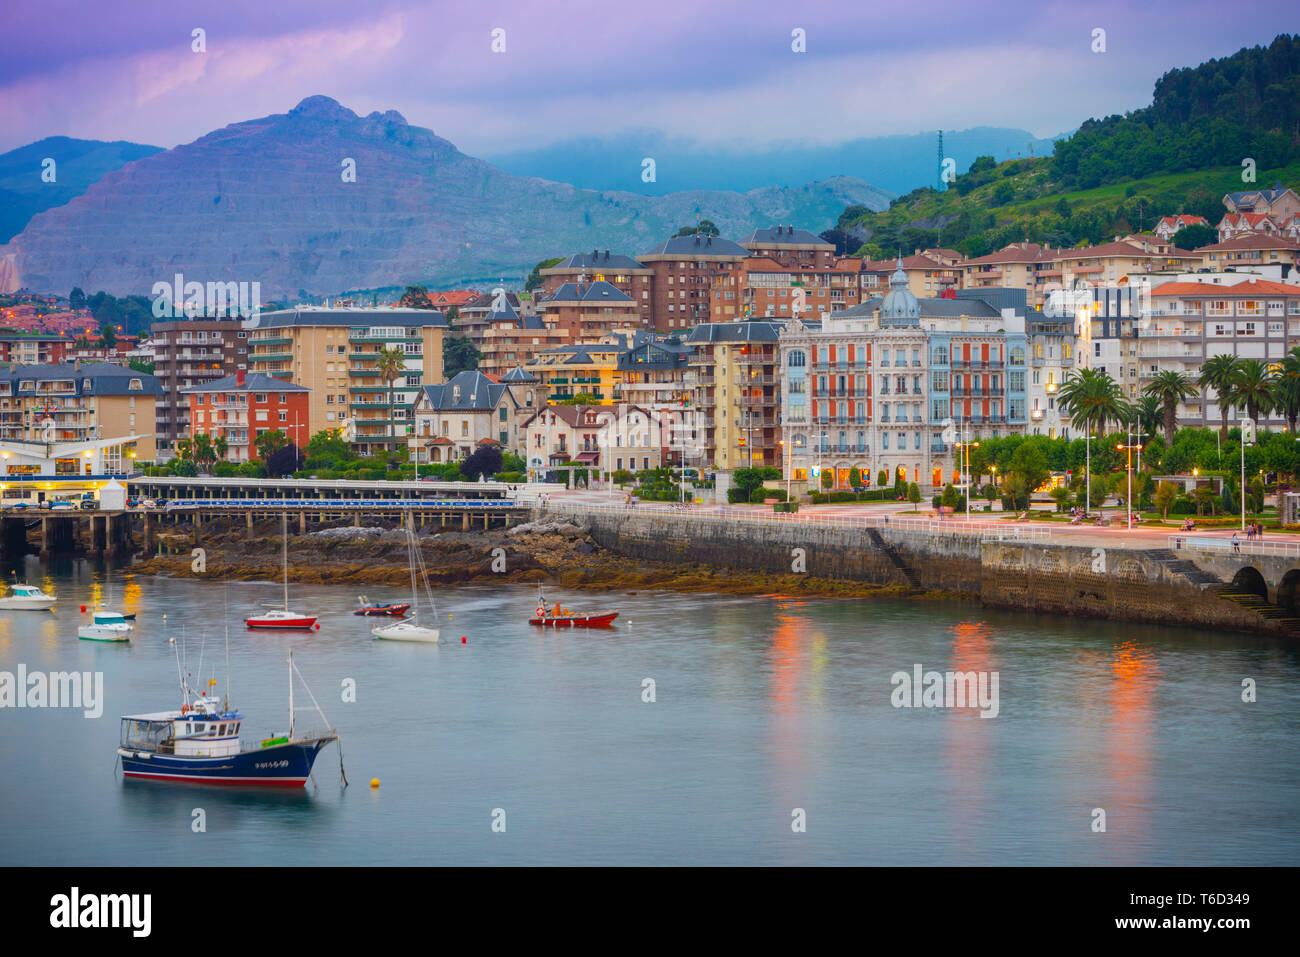 España, Cantabria, Castro-Urdiales, vista de la ciudad y del puerto Foto de stock